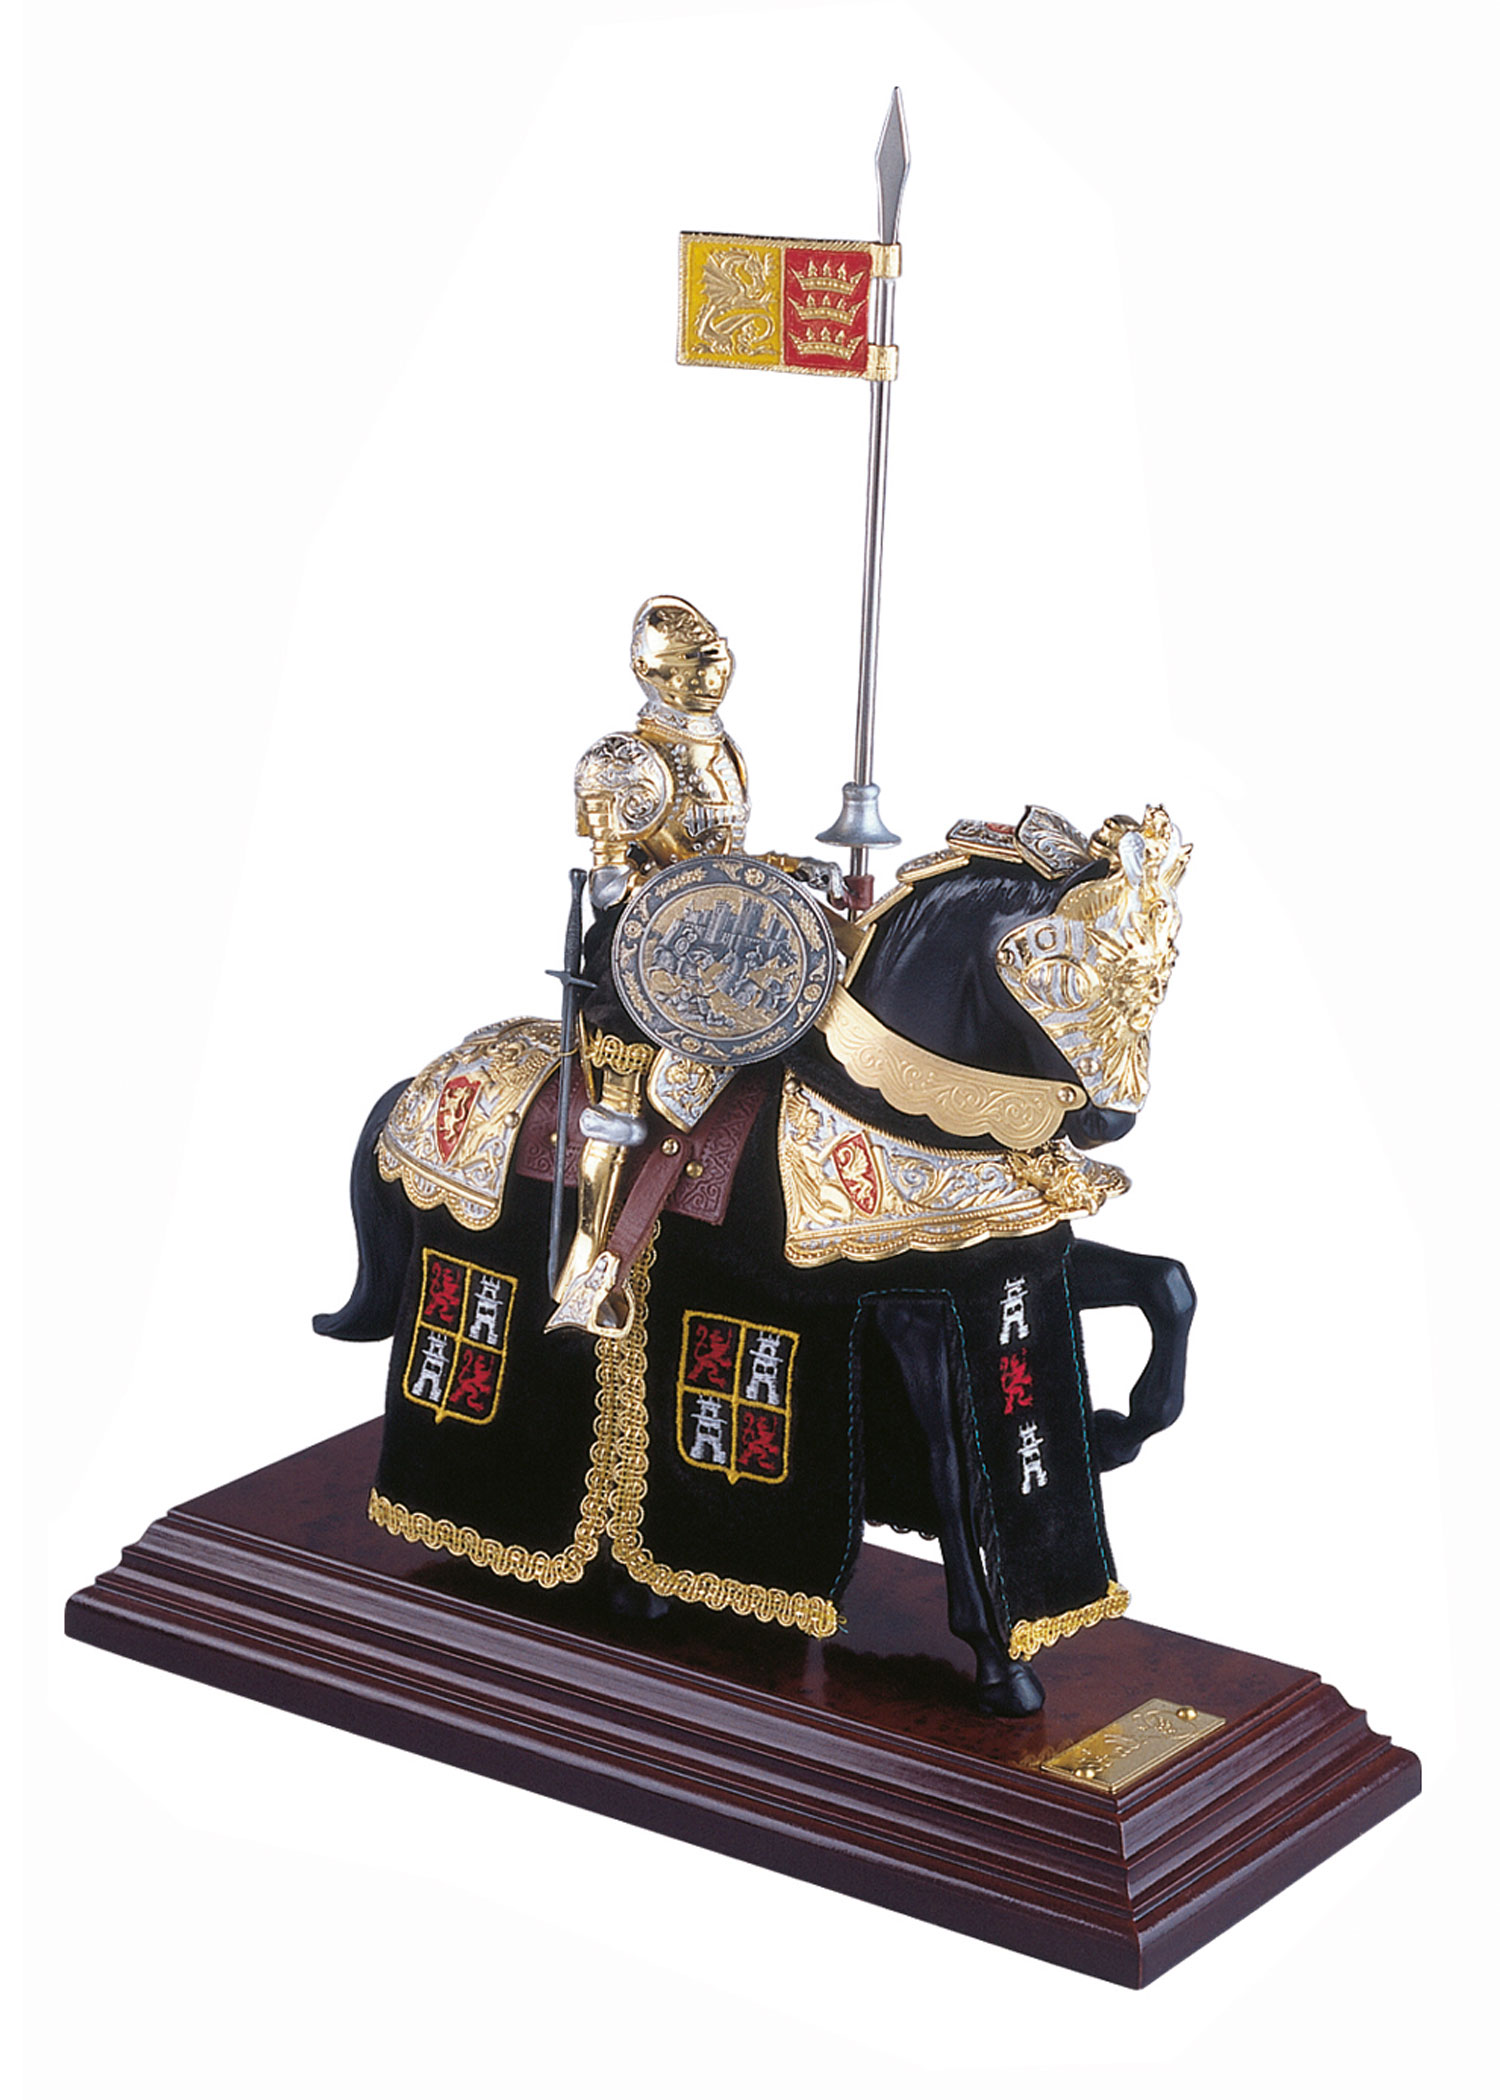 Miniatur Ritter auf Pferd, spanischer Helm, schwarz, Marto